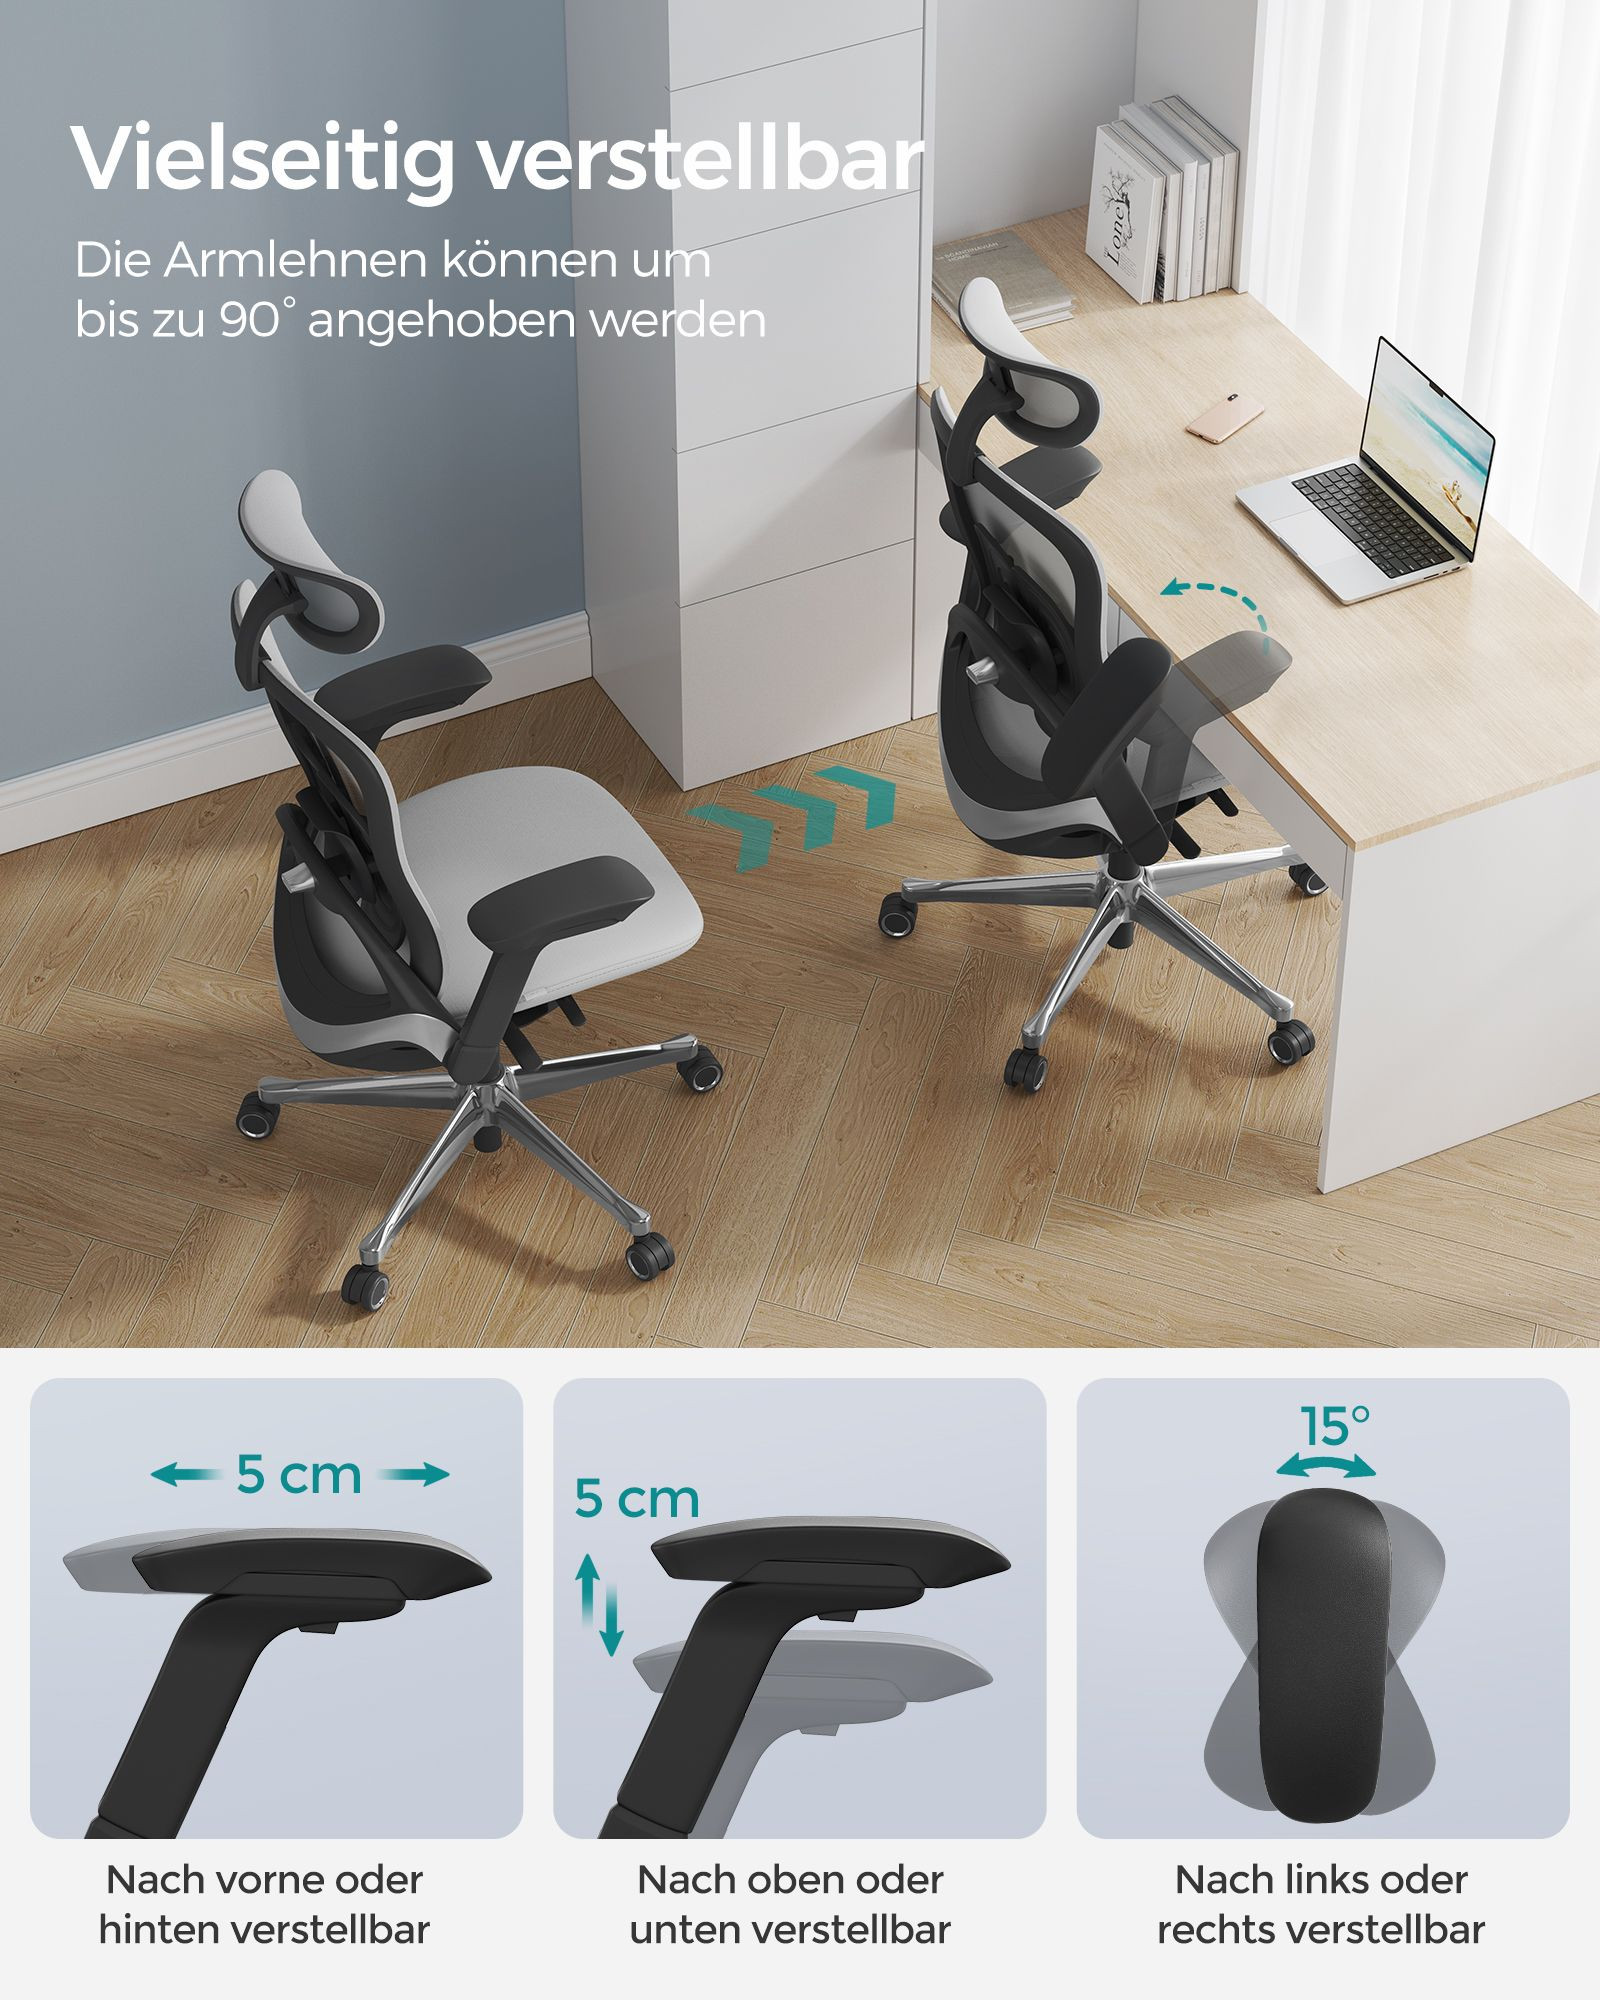 Kancelářská židle OBN065G01